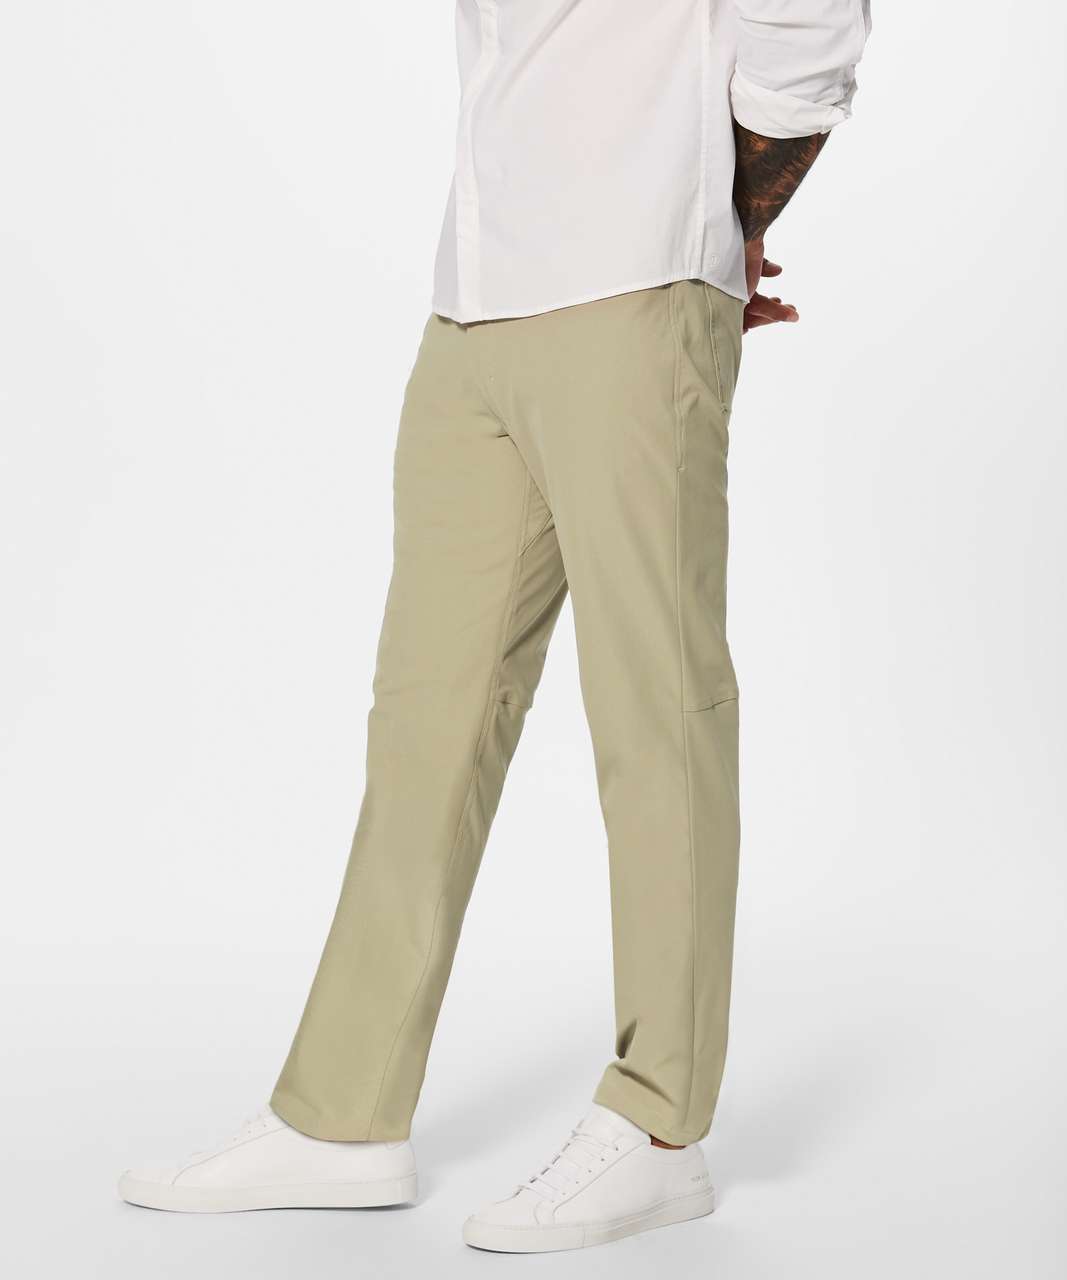 Lululemon ABC Classic-Fit Pants 34 Utilitech - ShopStyle